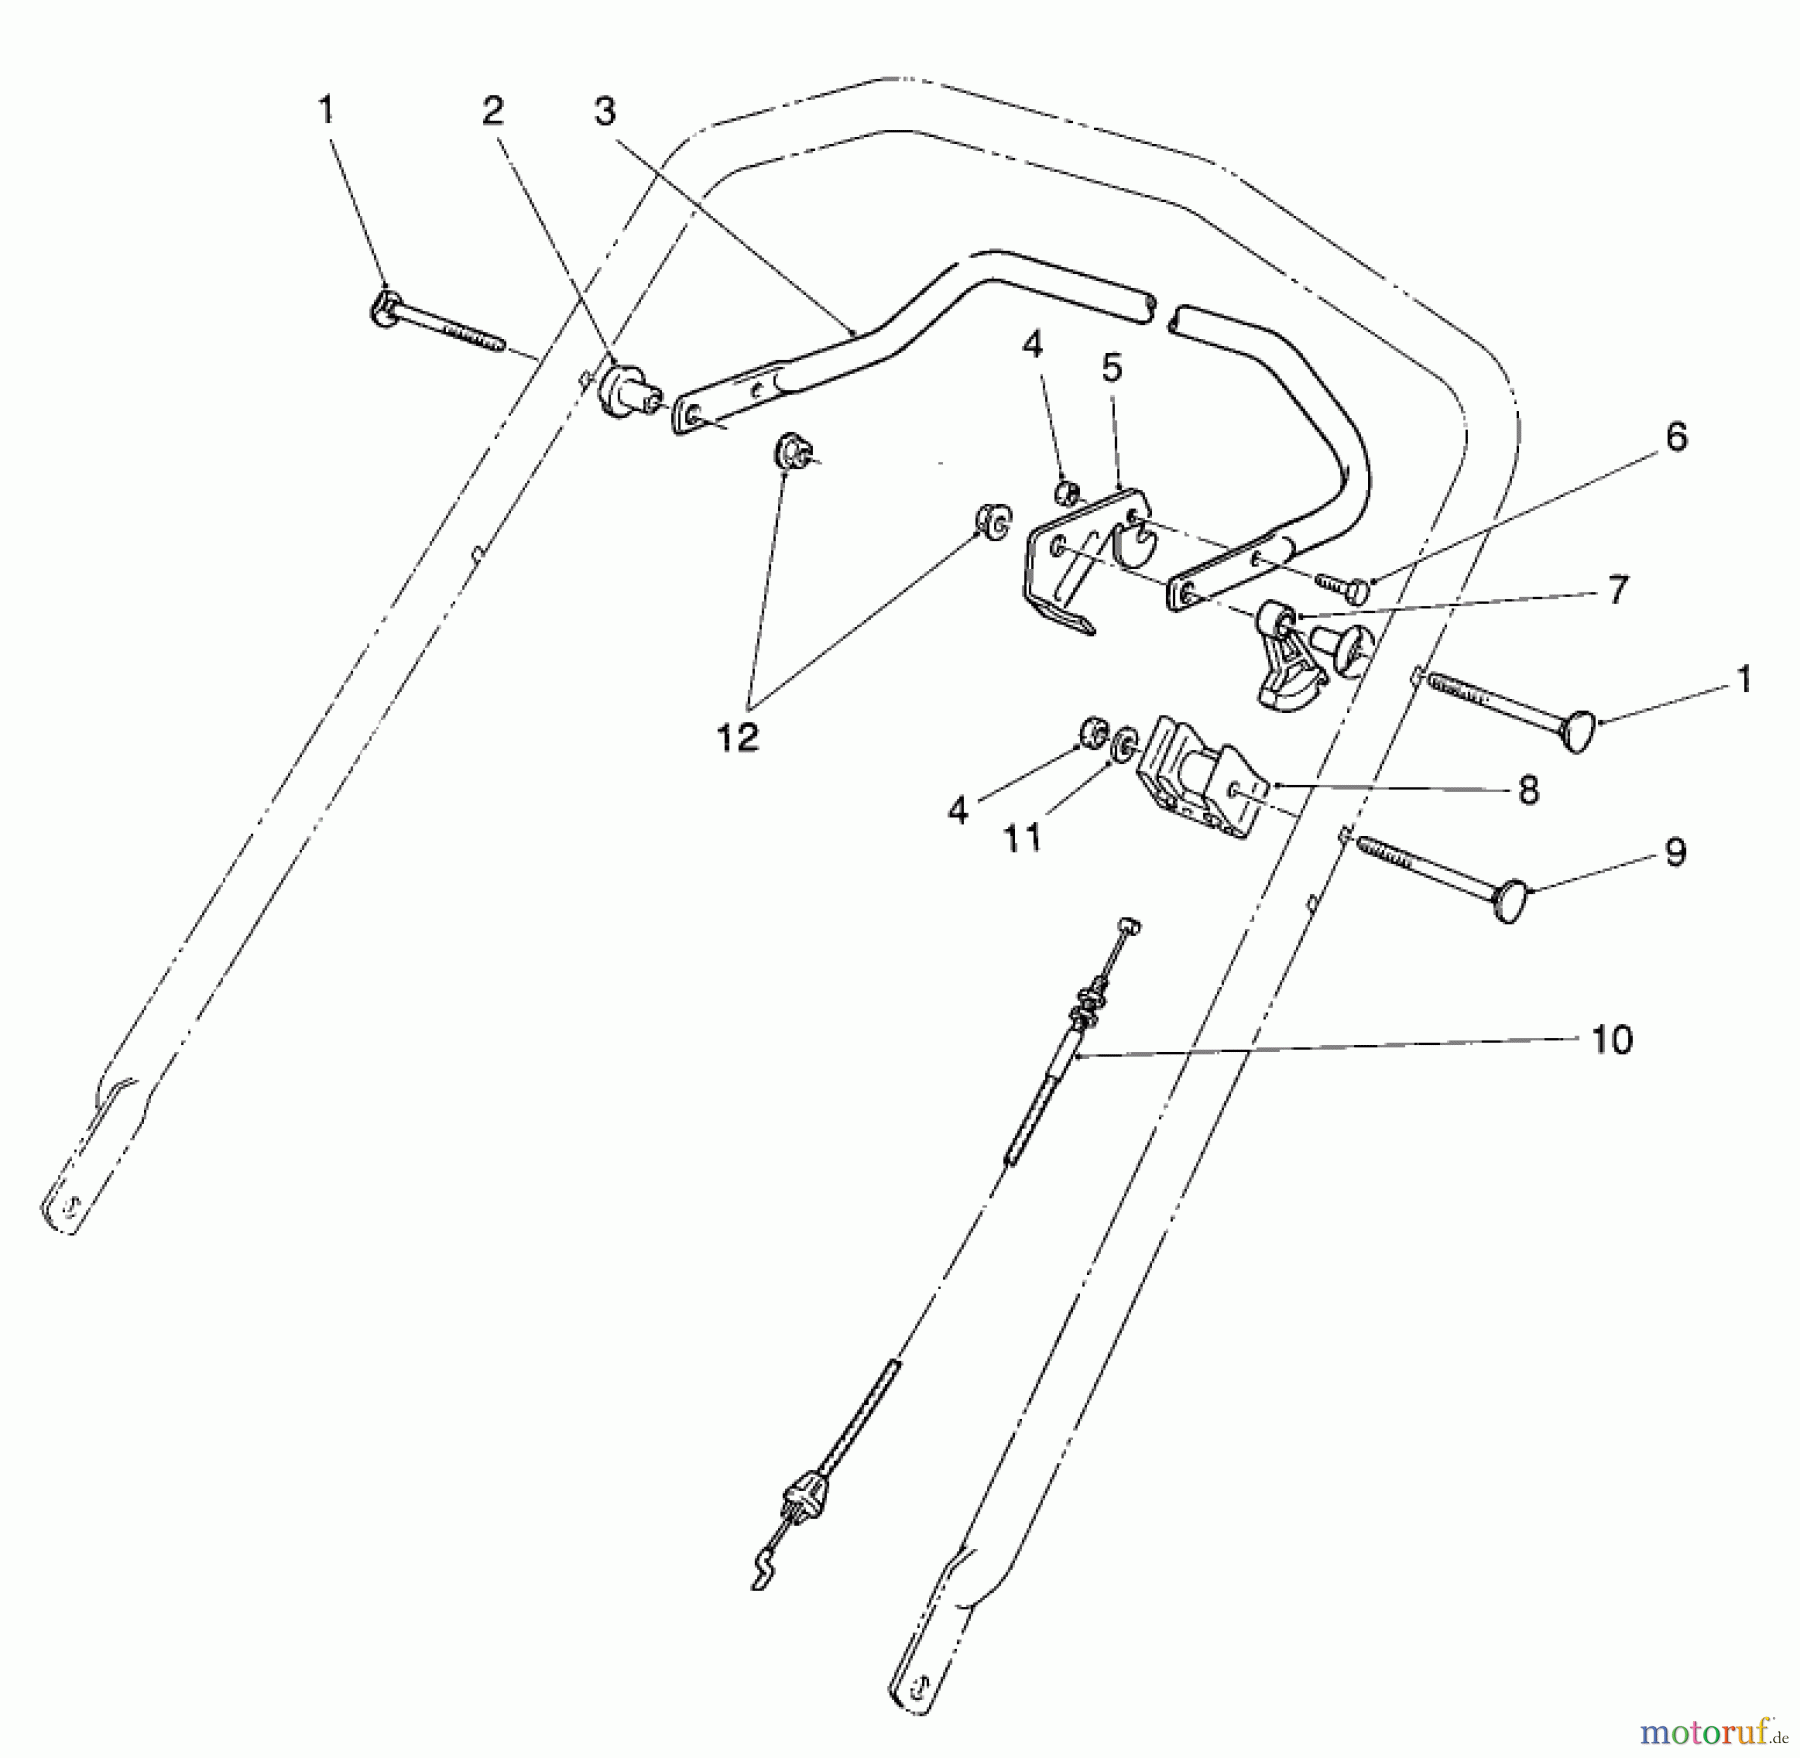  Toro Neu Mowers, Walk-Behind Seite 2 26620BG - Toro Lawnmower, 1992 (2000001-2999999) TRACTION CONTROL ASSEMBLY